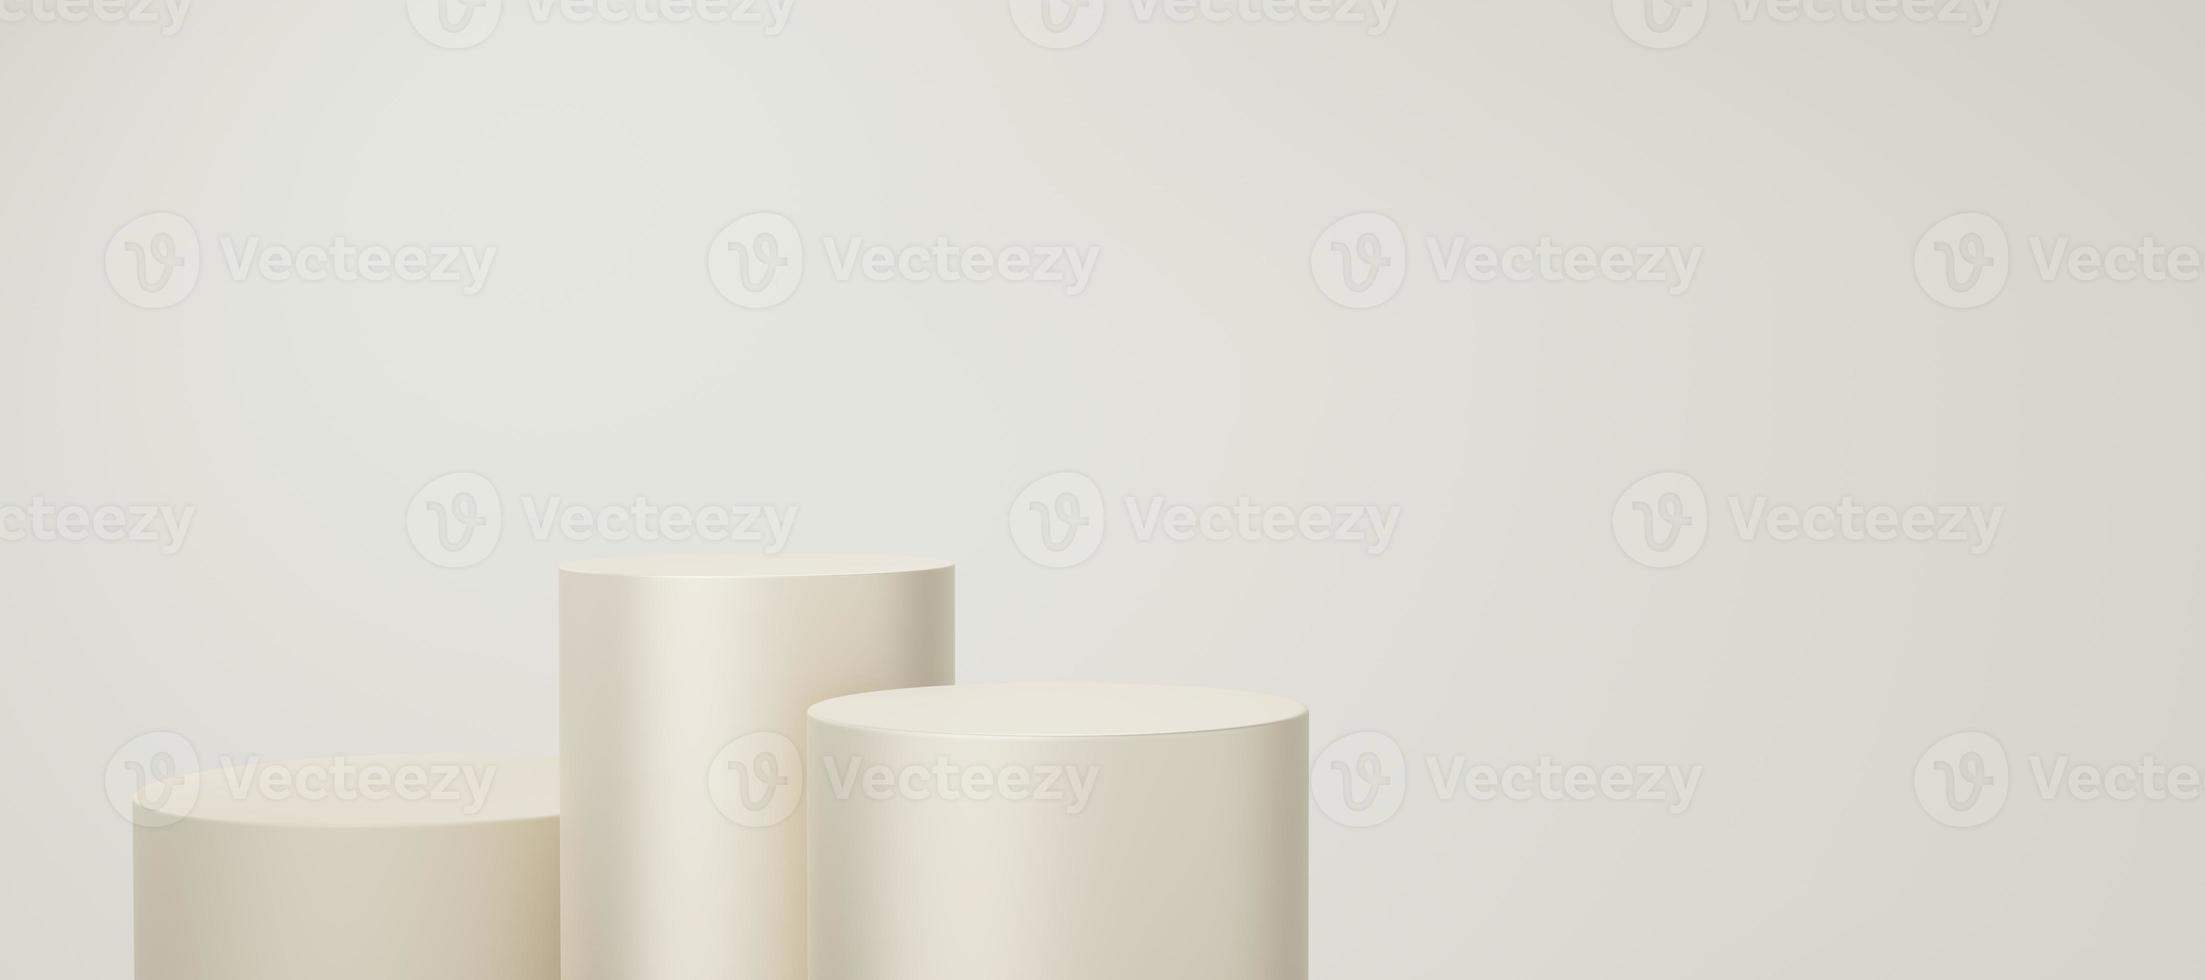 3 lege gele of crème cilinder podium drijvend op bot witte kopie ruimte achtergrond. abstracte minimale studio 3d geometrische vormobject. voetstuk mockup ruimte voor weergave van productontwerp. 3D render. foto